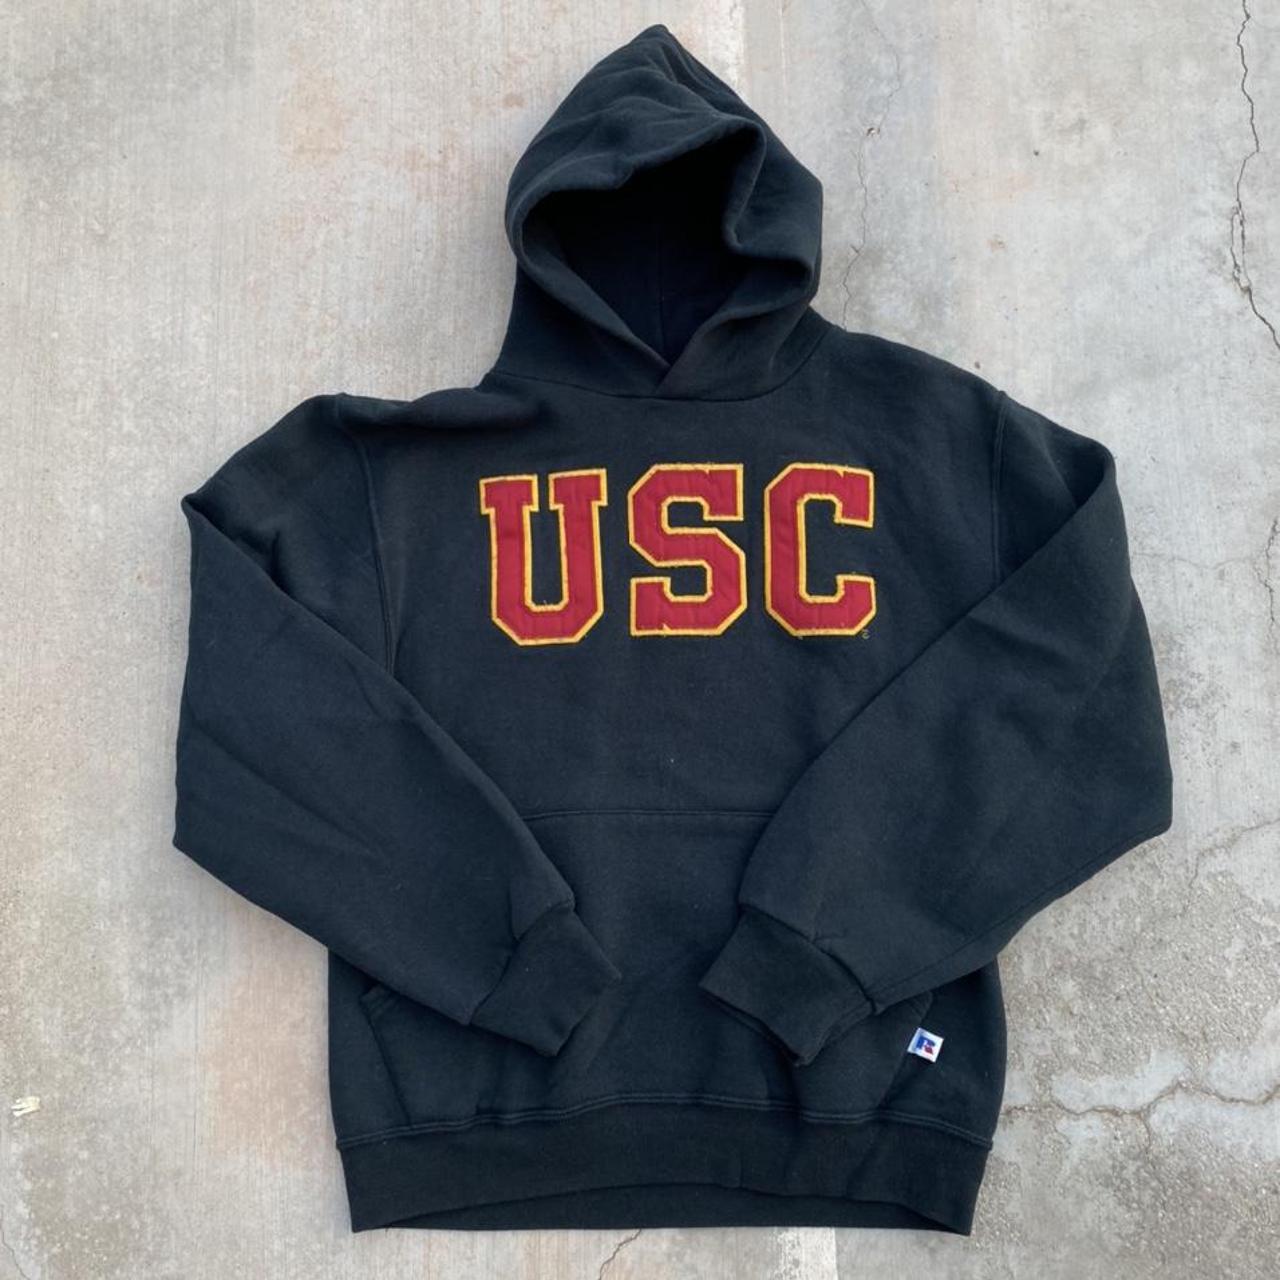 Vintage 90’s Russell Athletic USC Hoodie, item is in... - Depop